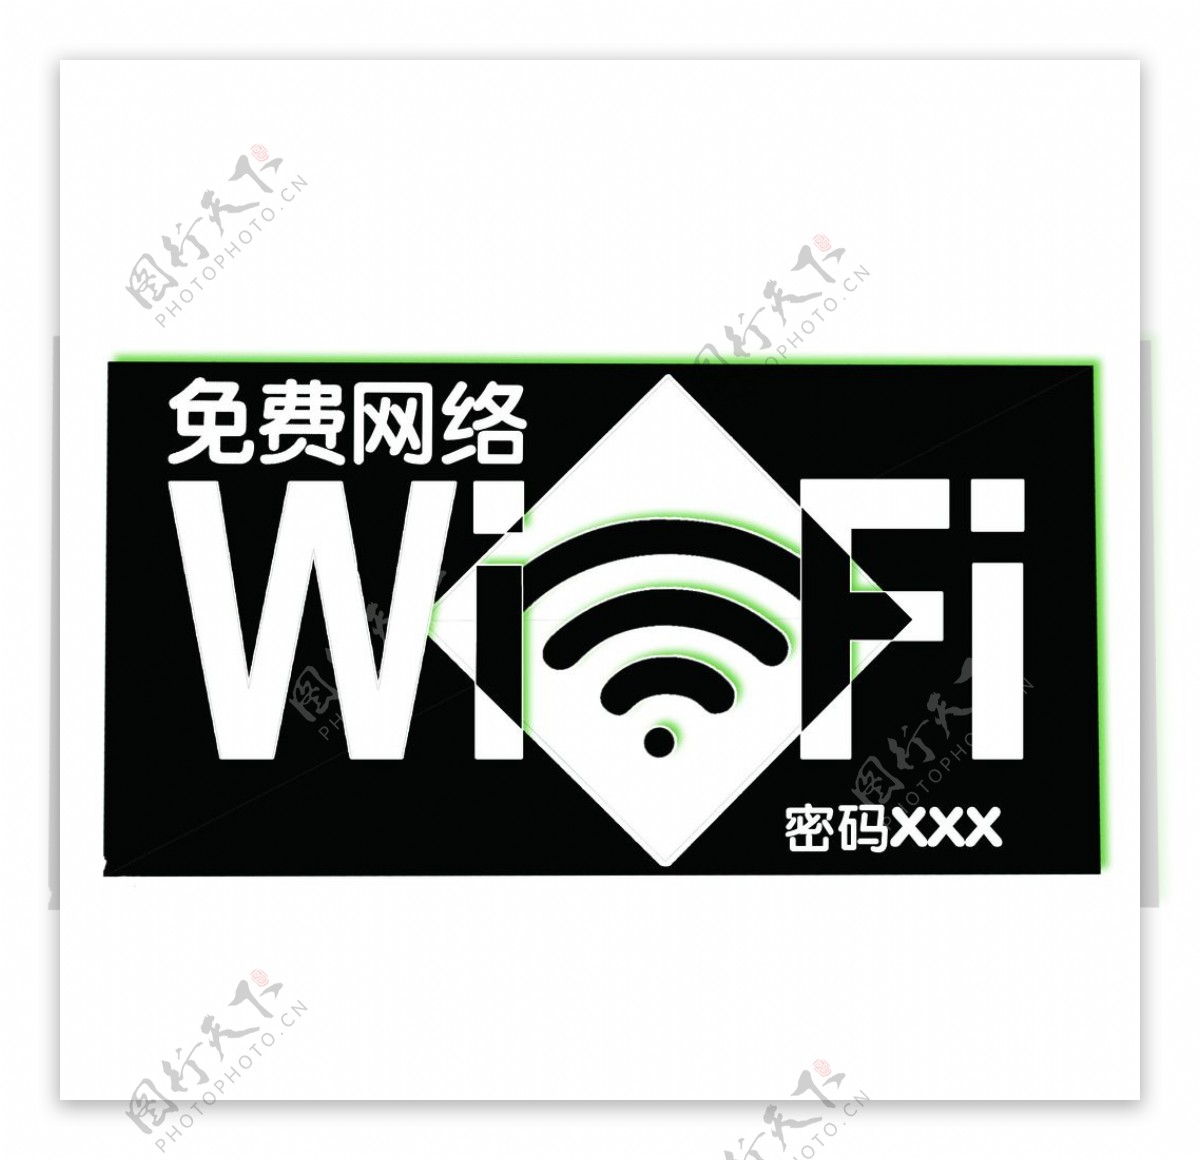 wifi标识图片